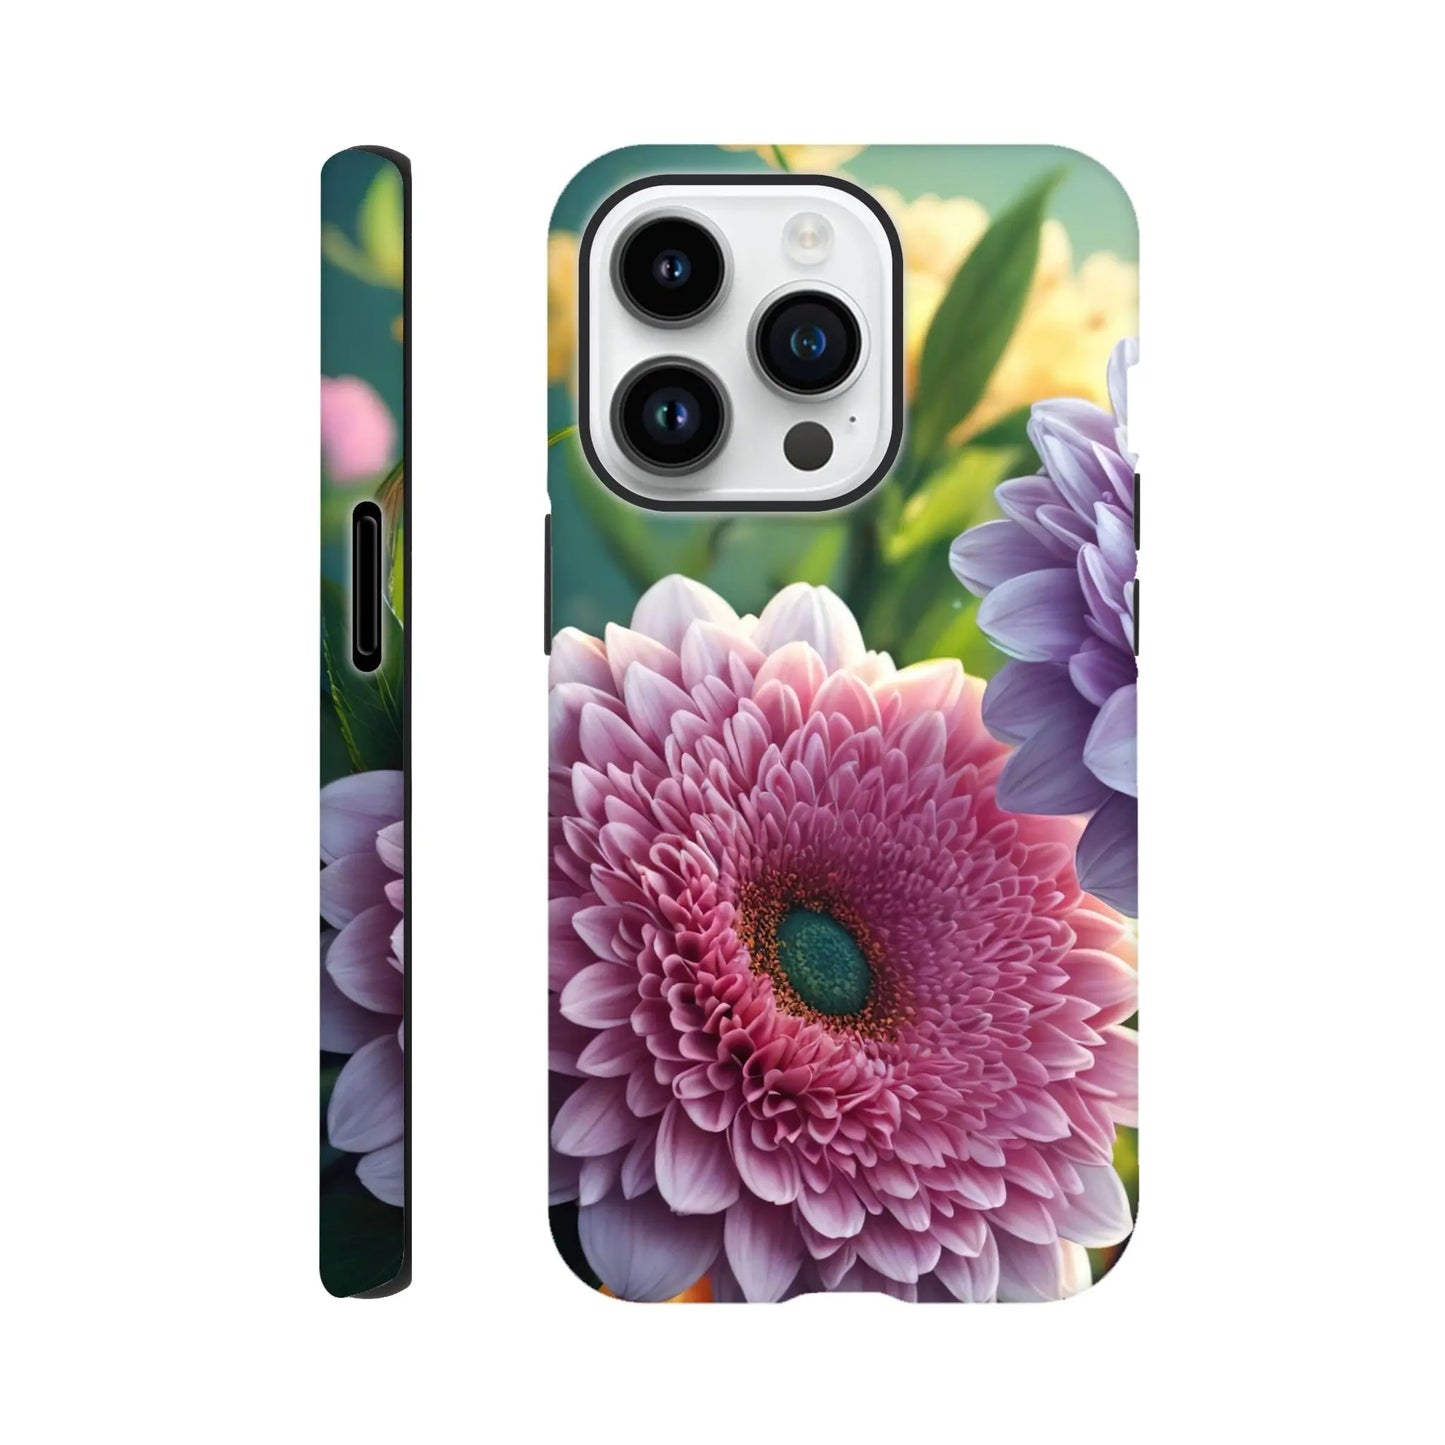 Smartphone-Hülle "Hart" - Blumen Vielfalt - Foto Stil, KI-Kunst, Pflanzen, iPhone-14-Pro - RolConArt